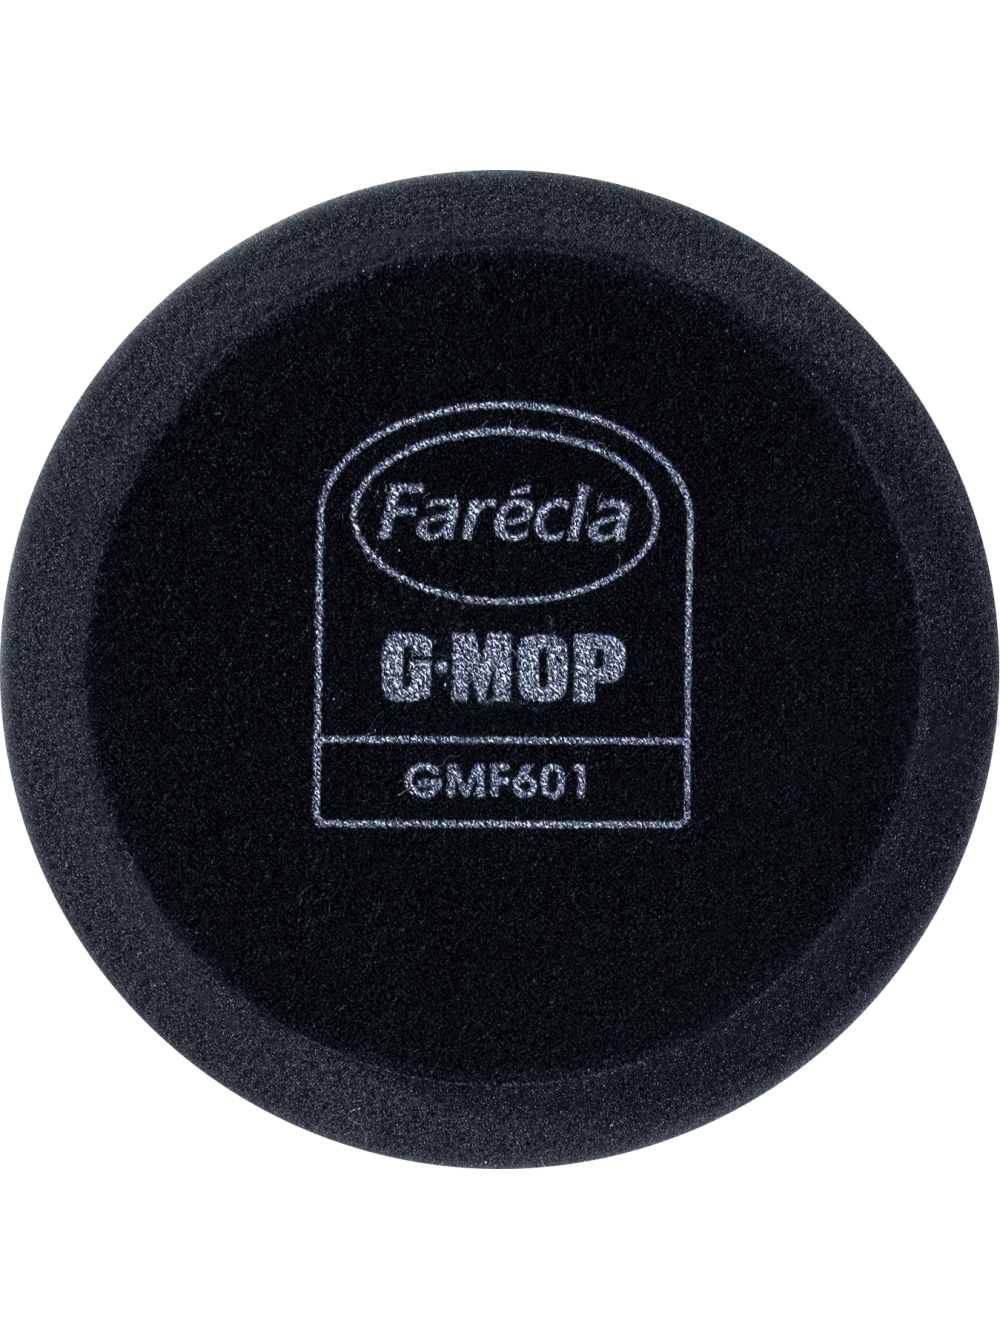 G Mop 6" Finishing Foam ЧЕРНЫЙ Полировальник для финишной пасты 2 круга в упаковке, Farecla GMF601